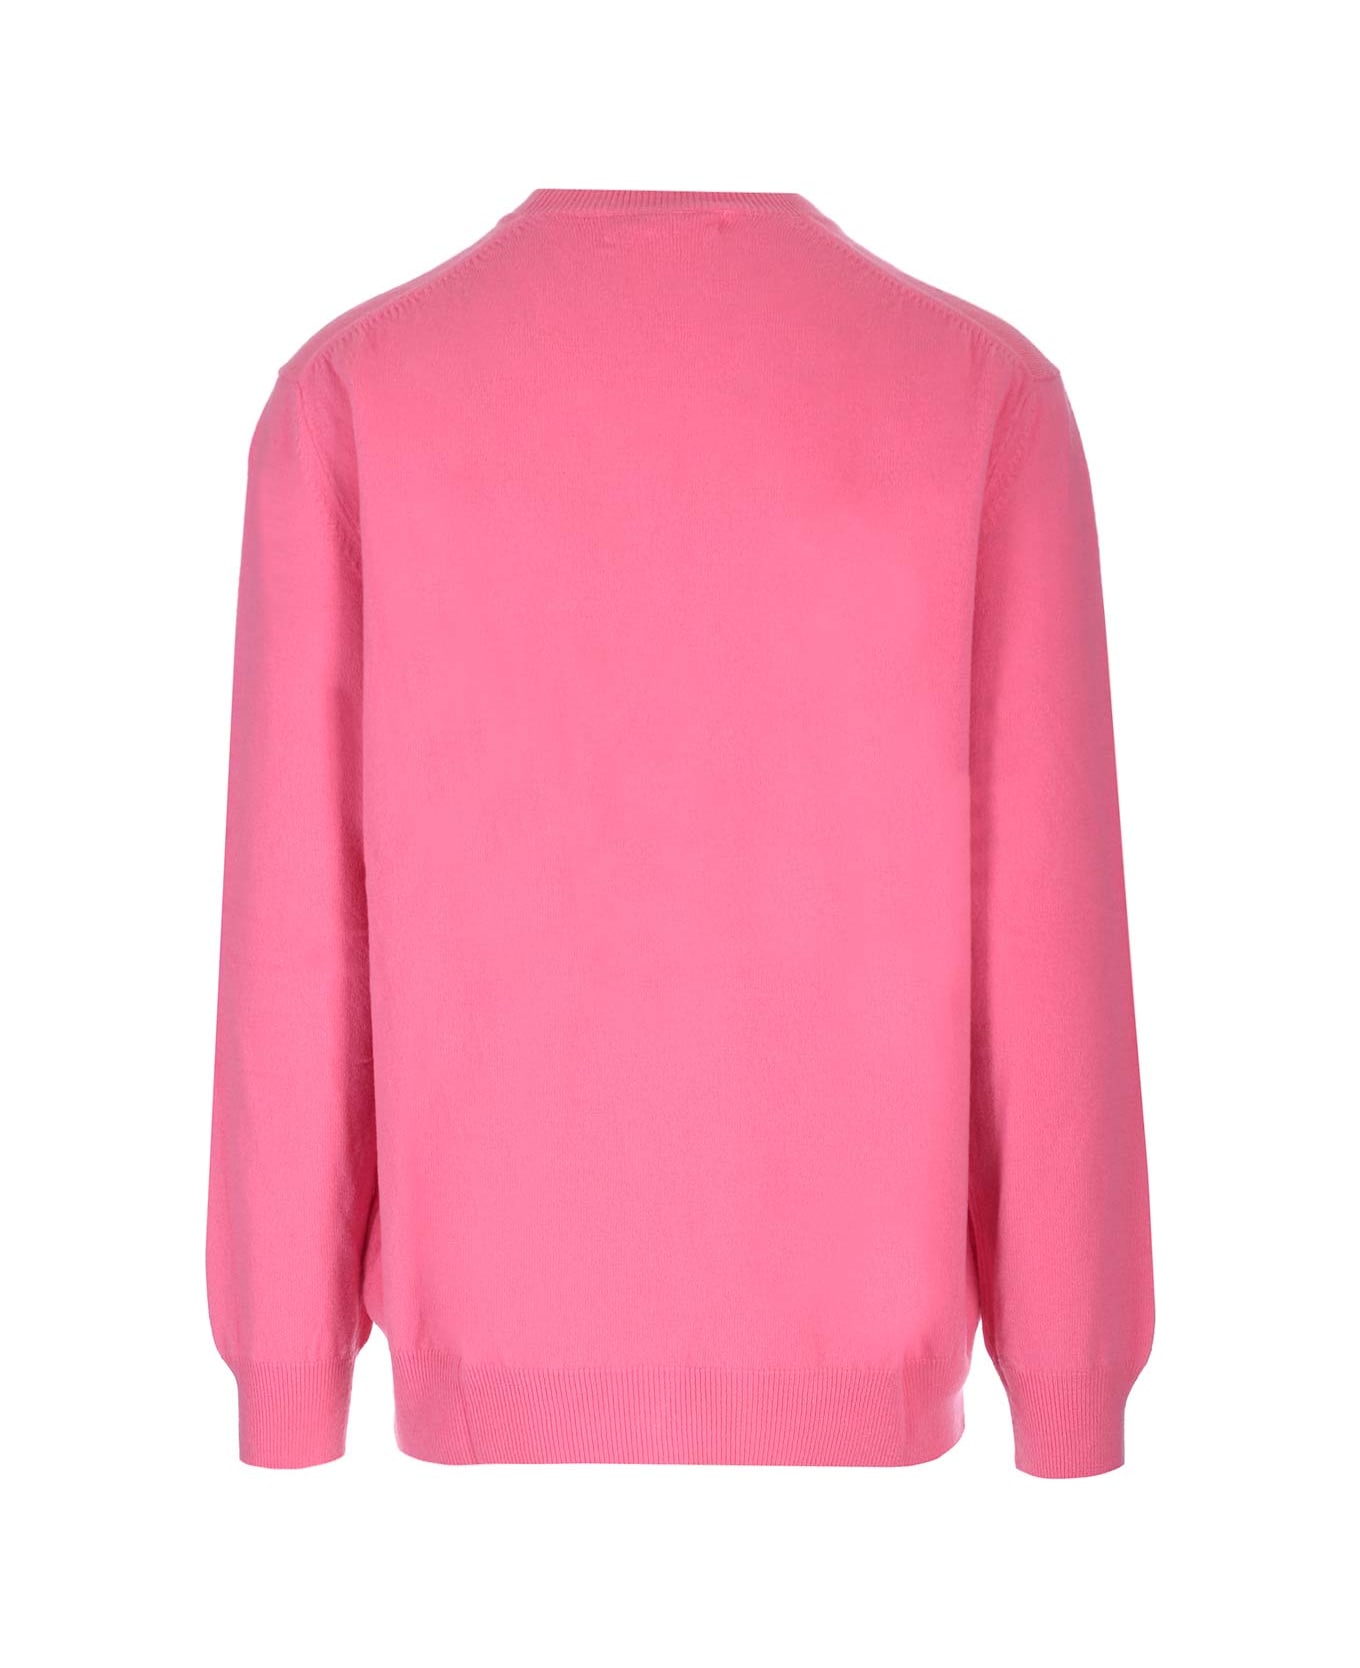 Comme des Garçons Shirt Pink Wool Sweater - Pink ニットウェア